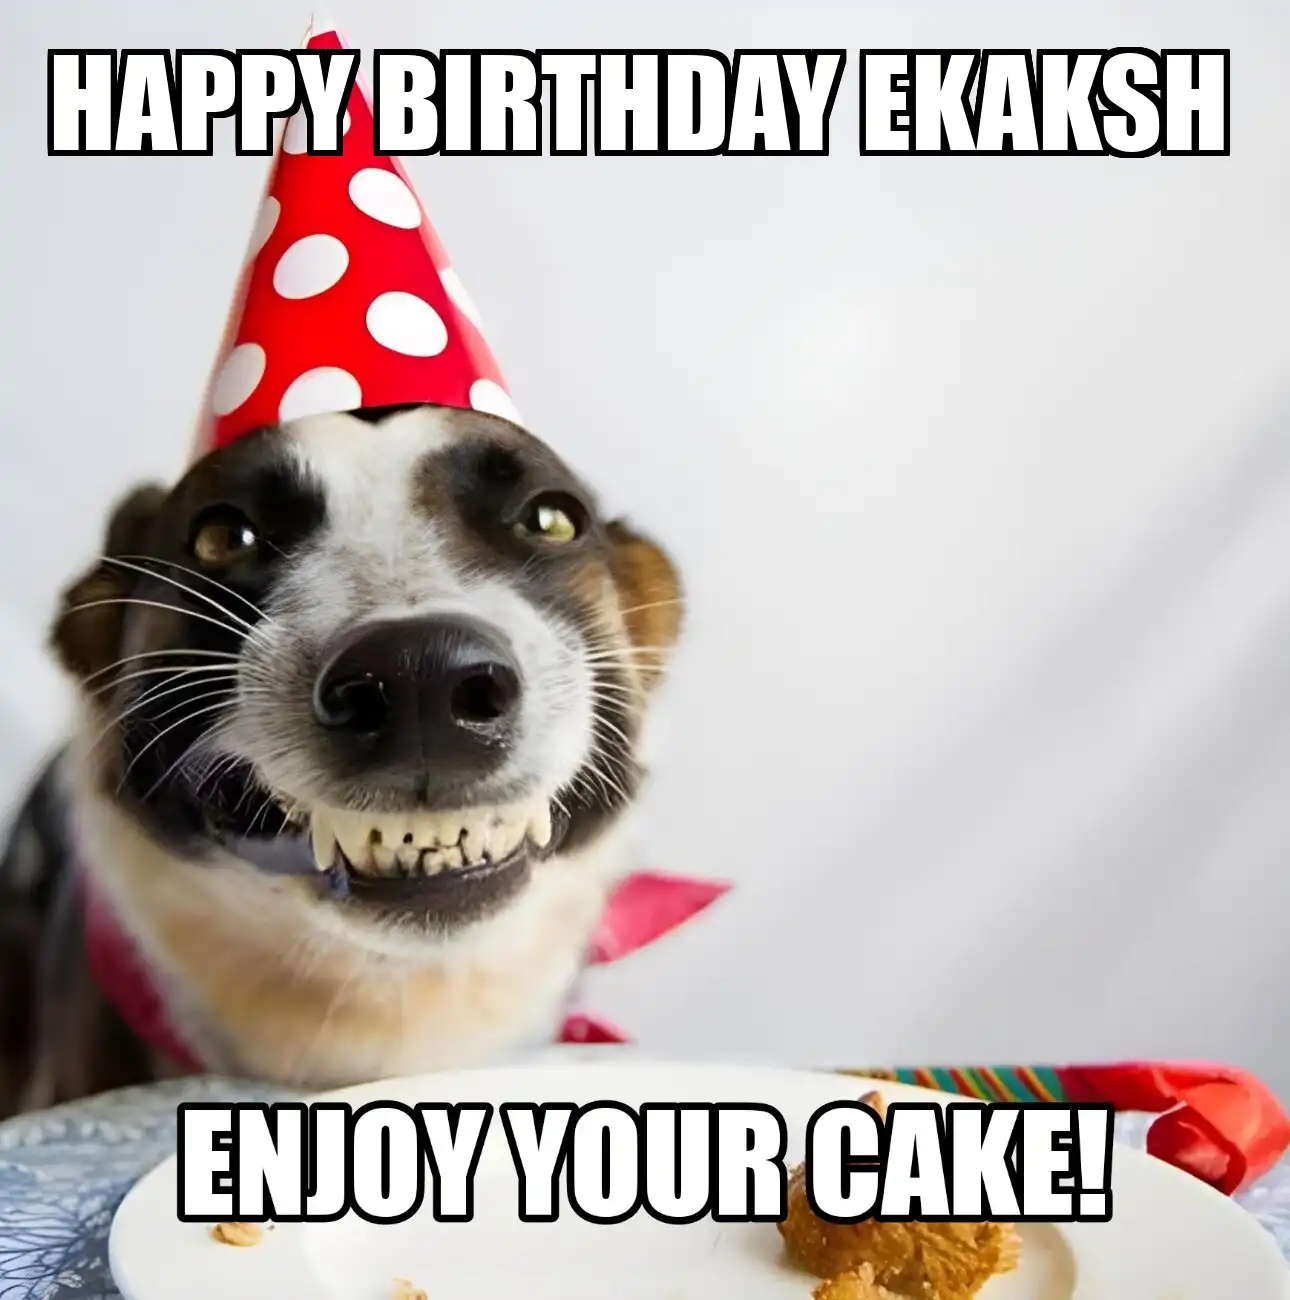 Happy Birthday Ekaksh Enjoy Your Cake Dog Meme